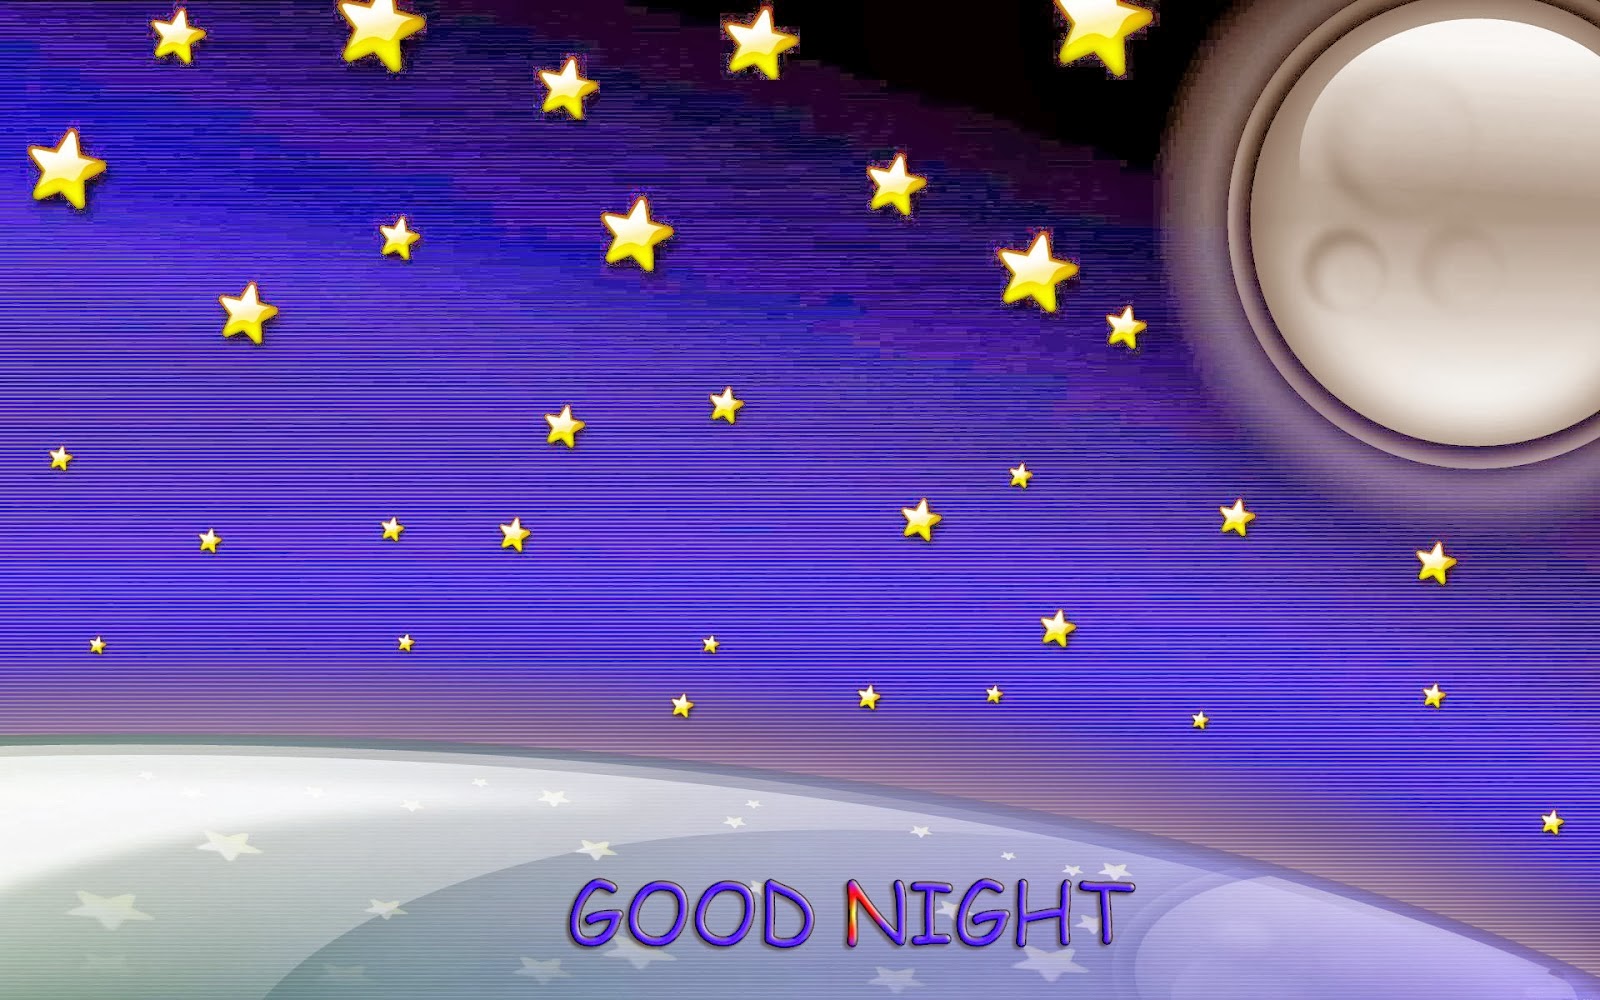 Good Night HD Wallpaper Unique